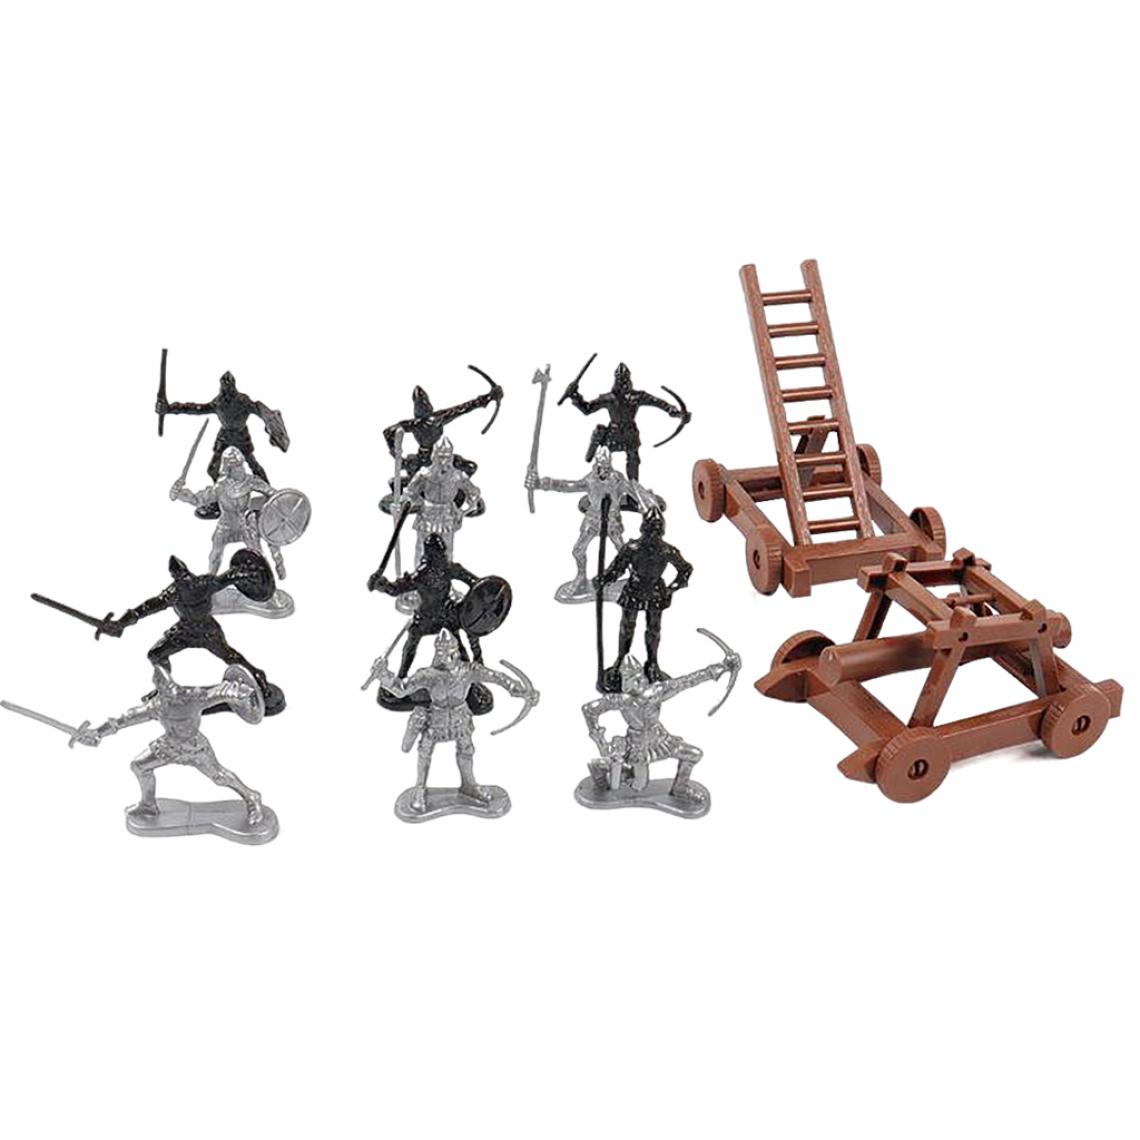 marque generique - Figurines D'action Militaire Armée Hommes Soldats Playset Table De Sable Scène Jouer 34 Pièces - Guerriers